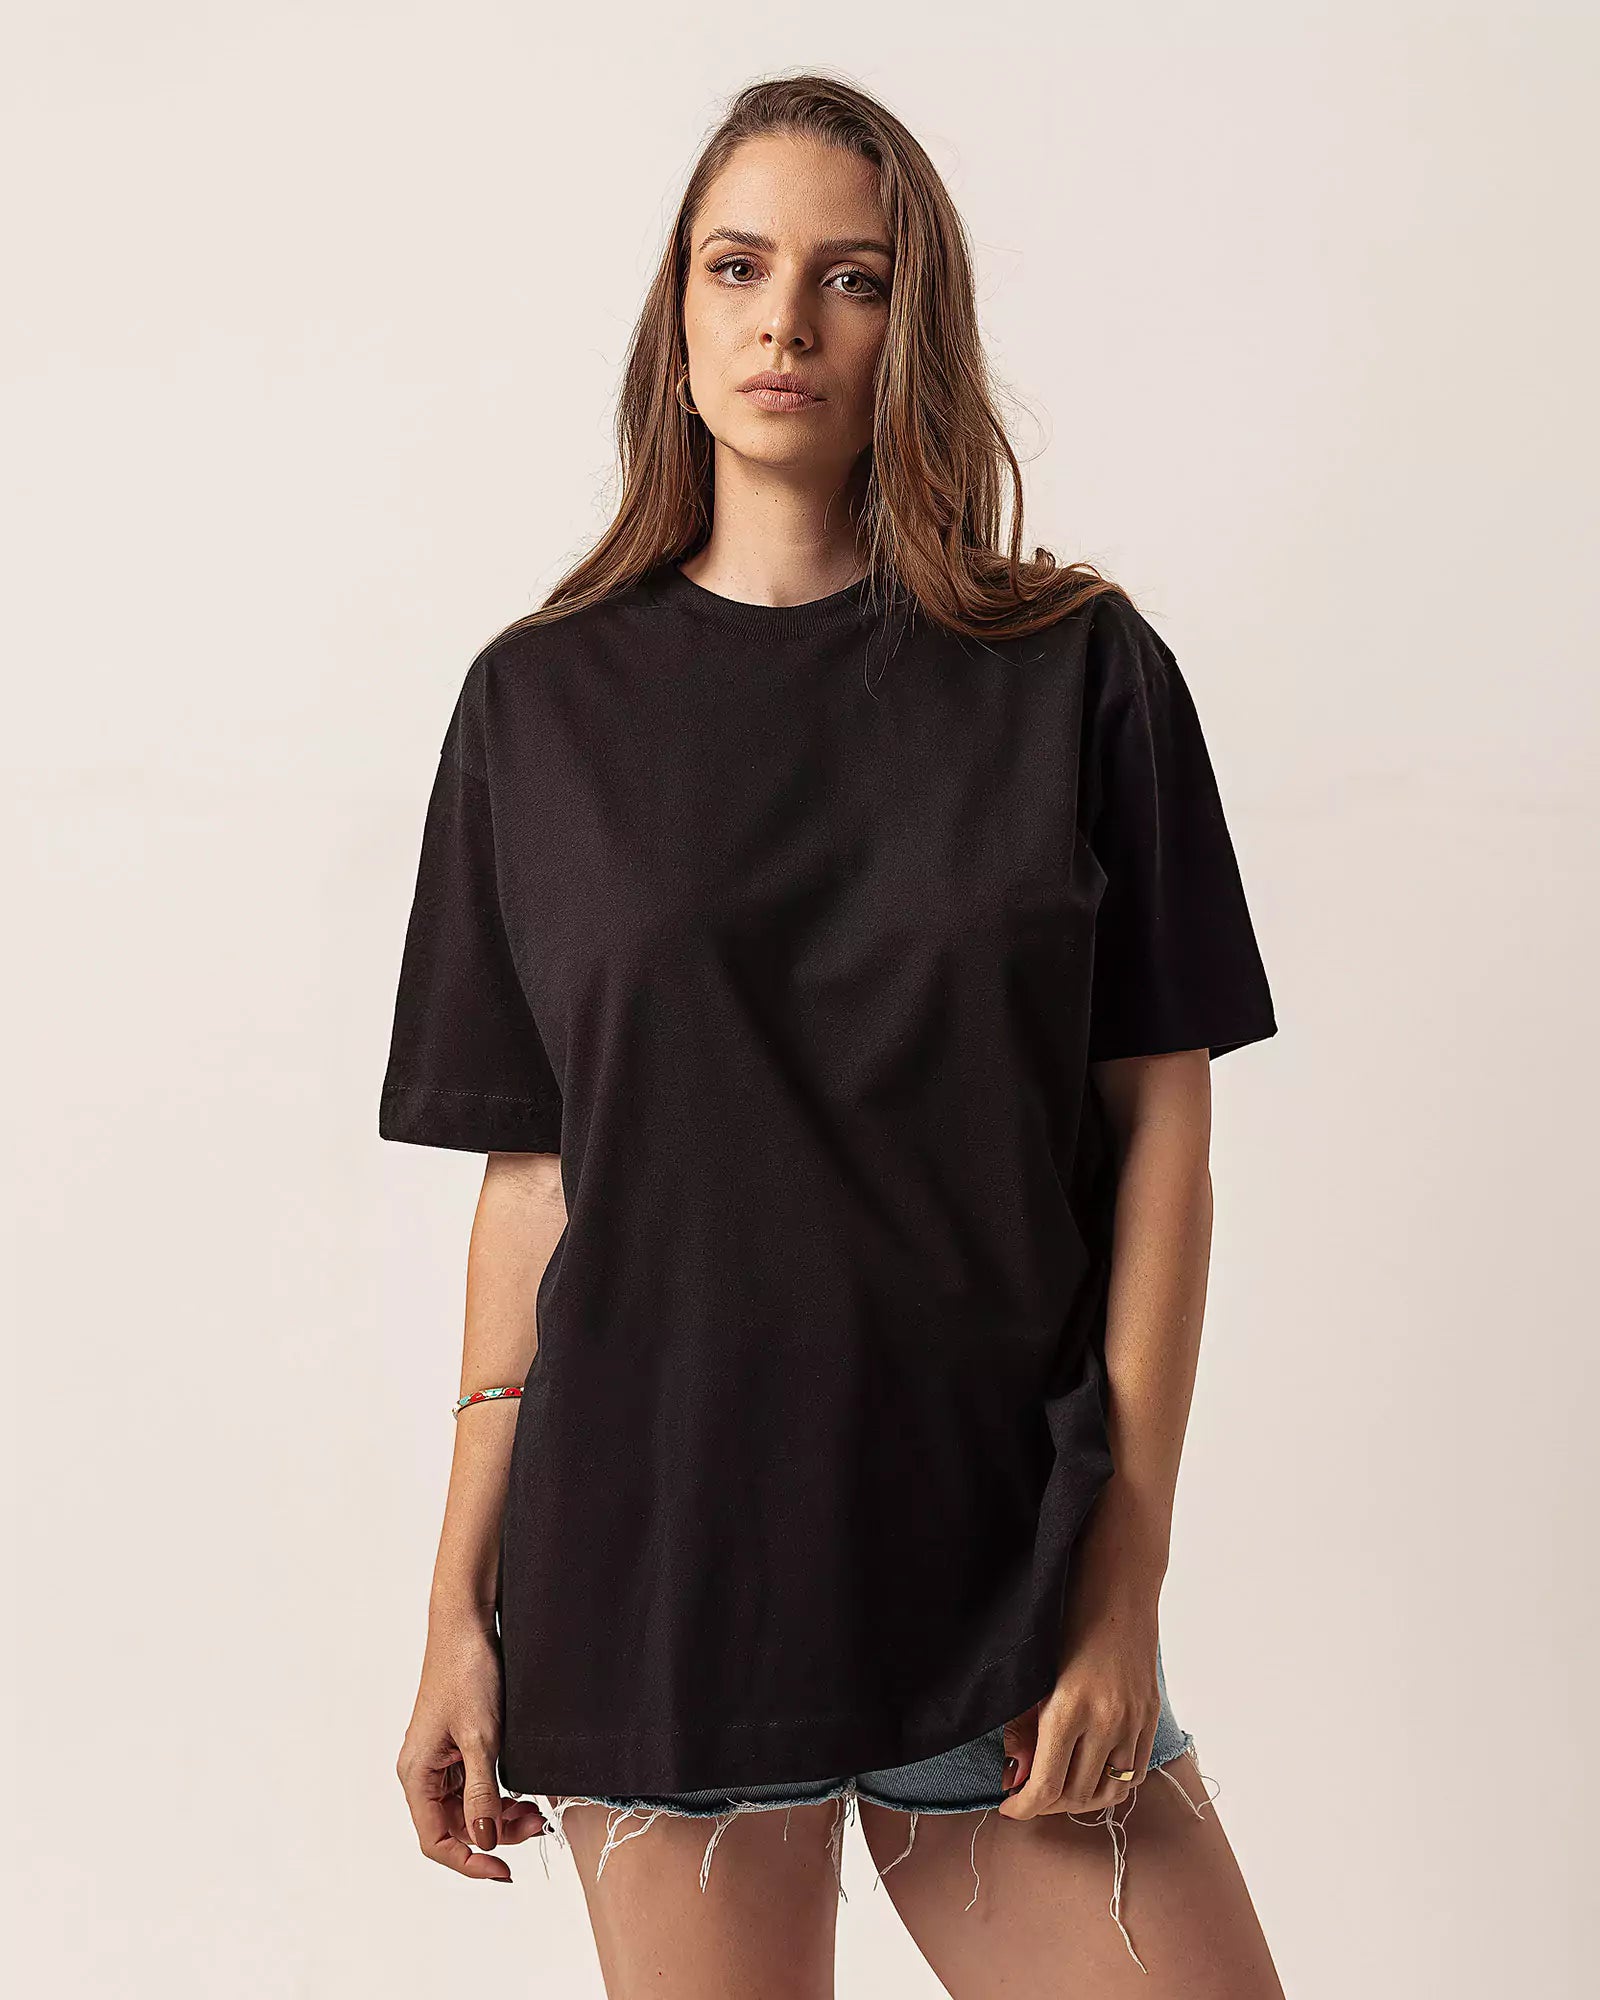 T-shirt Oversized de Algodão Orgânico Preta. Compre online moda sustentável e atemporal na Minimadeia. Roupas femininas estilosas, básicas e sustentáveis. Foto produto 02